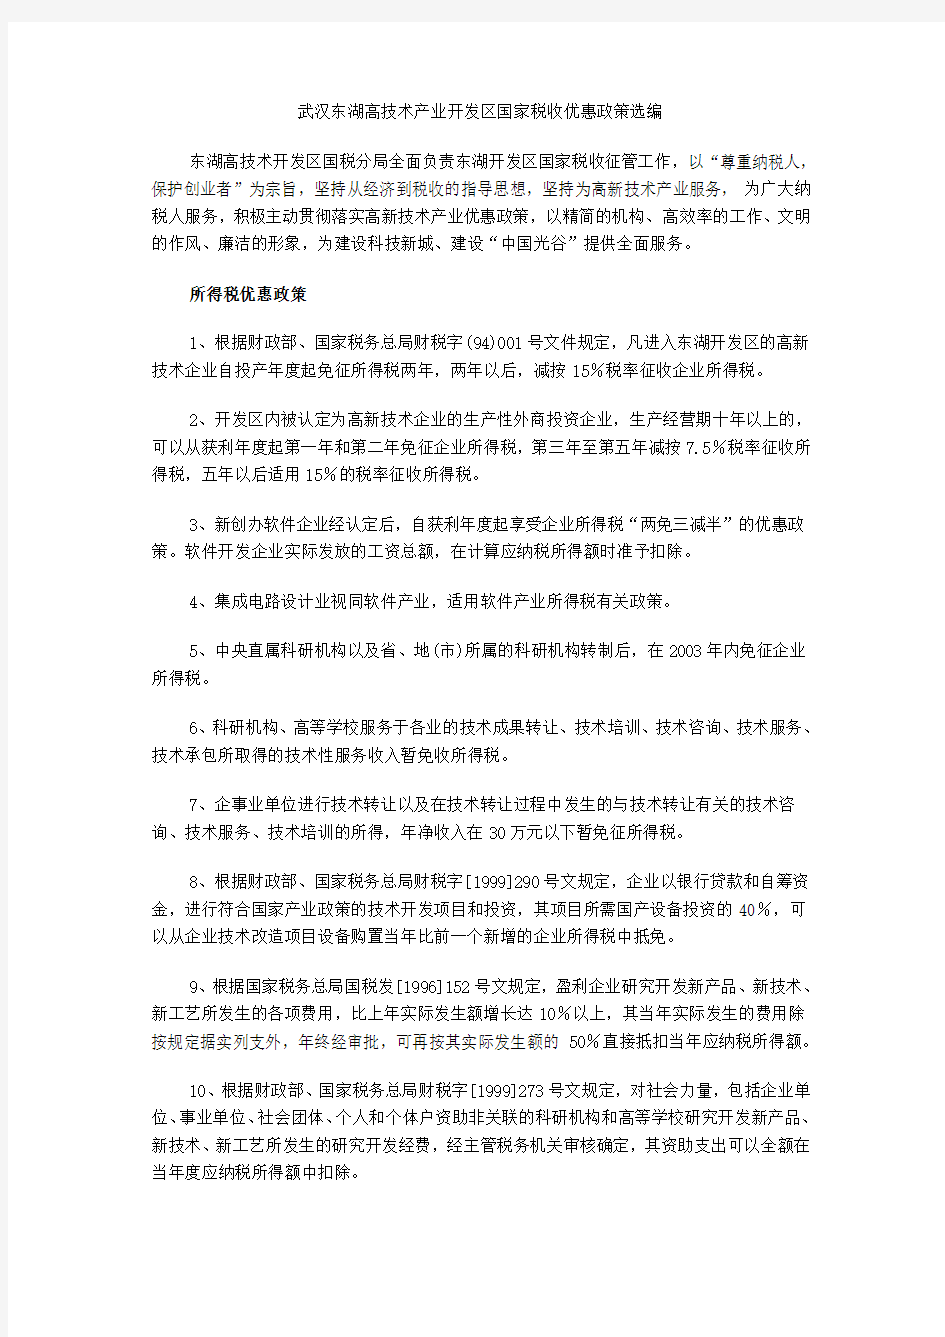 武汉政府和东湖高技术产业开发区国家税收优惠及政策扶持相关资料